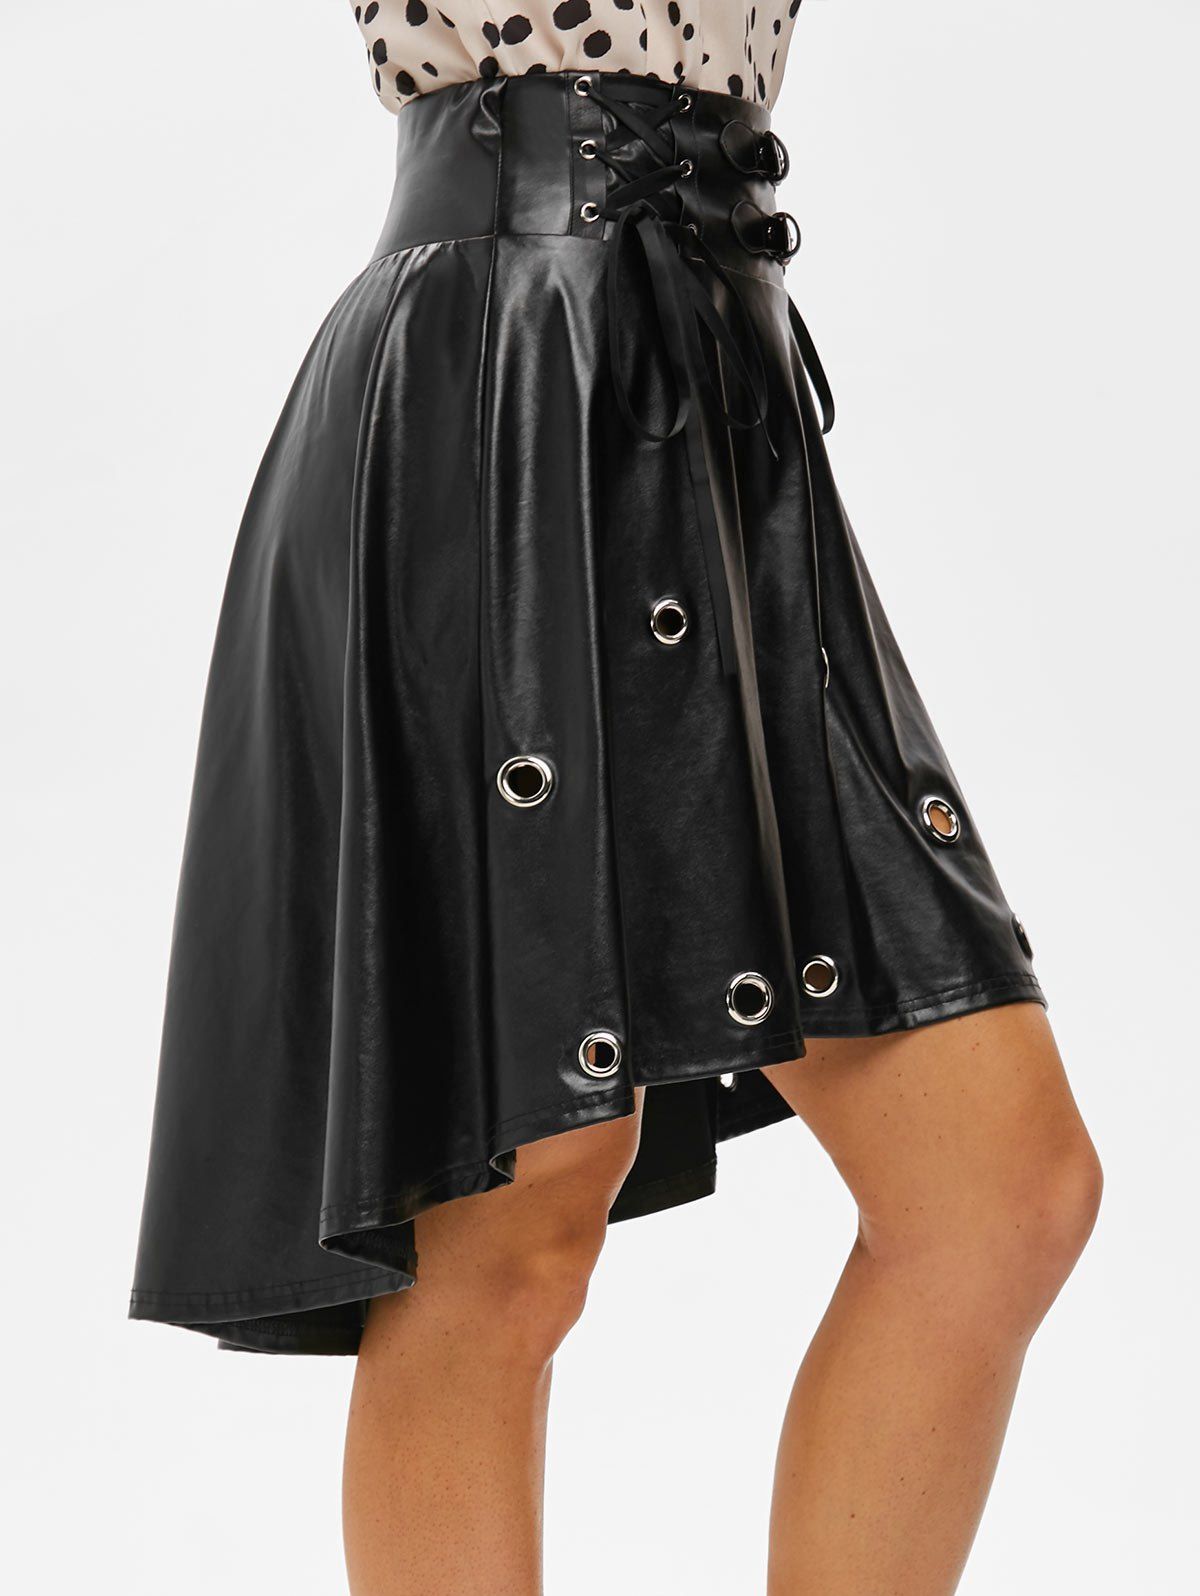 Unique Punk Lace Up Grommets High Low Faux Leather Skirt  